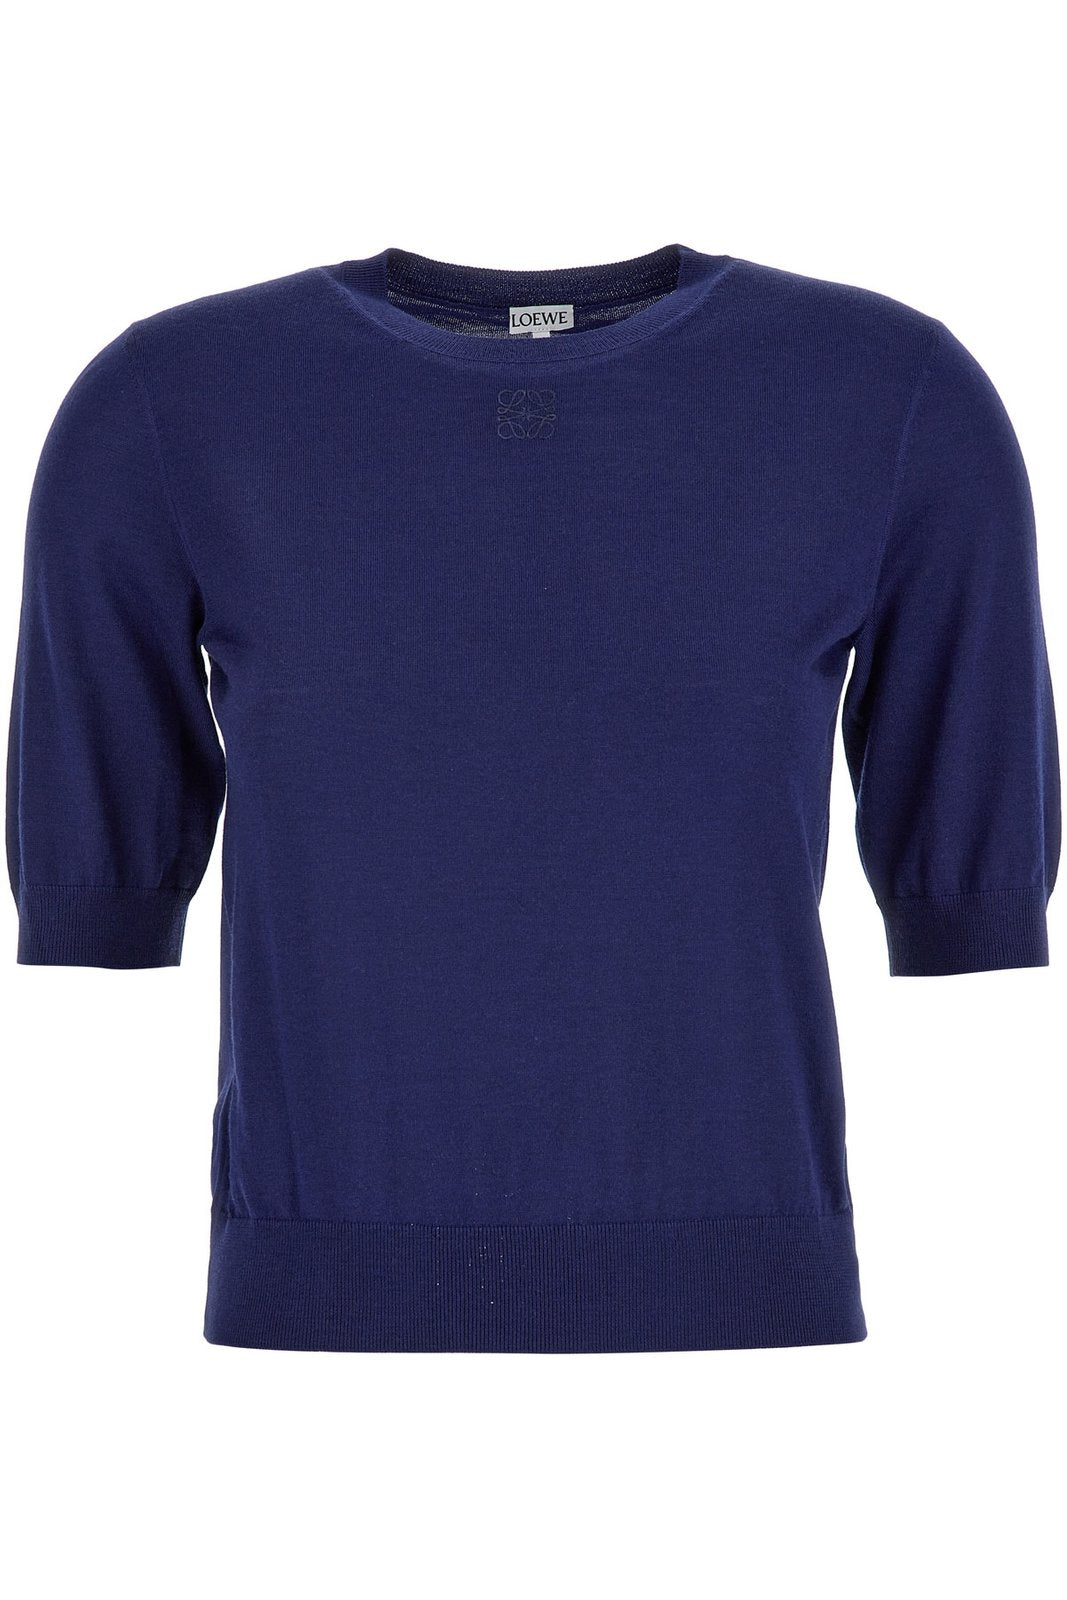 Loewe Anagram Cropped Sleeves Sweater